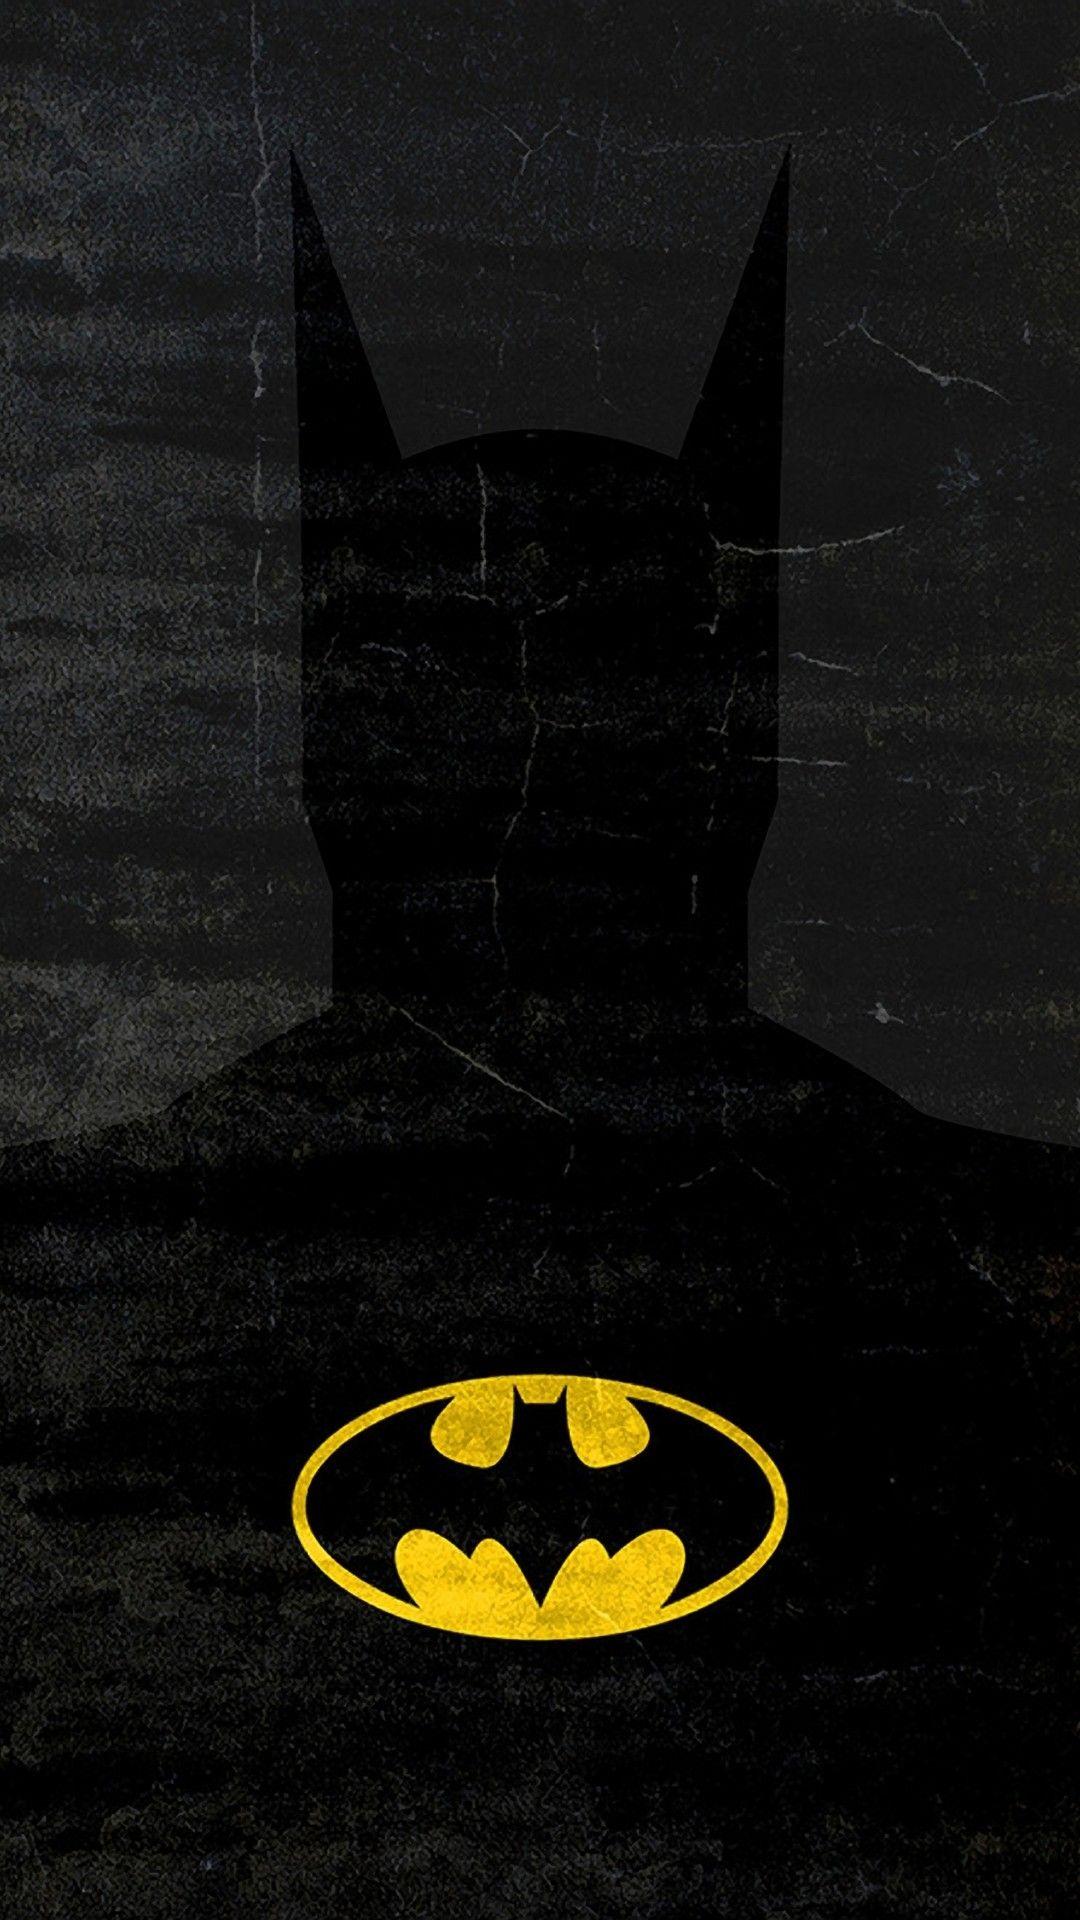 Batman Screensaver Phone Wallpapers - Wallpaper Cave